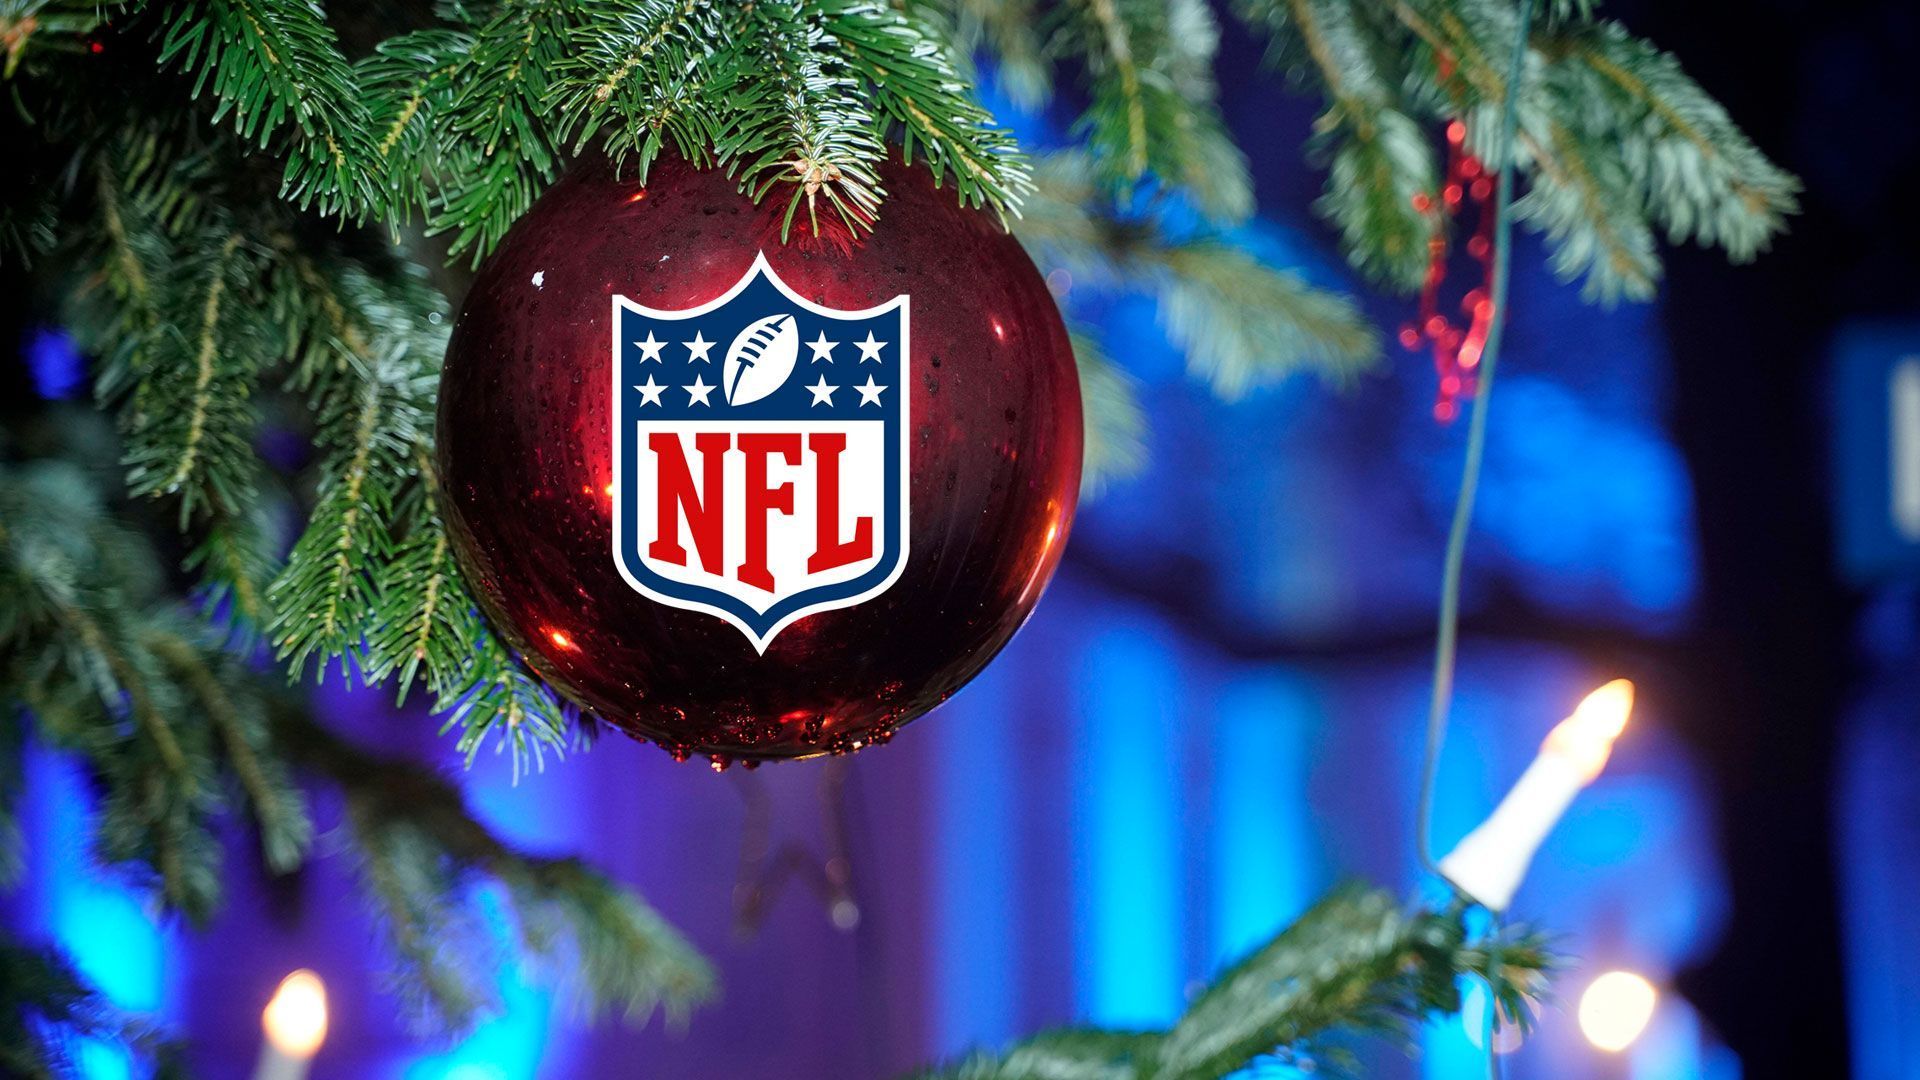 
                <strong>NFL unter dem Weihnachtsbaum</strong><br>
                Der große Weihnachtsfeiertag in den USA ist der 25. Dezember. Die prestigeträchtigen "Christmas Games" bestreiten in Woche 16 die Packers, Dolphins, Broncos, Rams, Buccaneers und Cardinals. Der 24. Dezember hingegen wird in Amerika nicht gefeiert. NFL-Fans hierzulande können sich allerdings auf geballte NFL-Aktion unter dem Christbaum freuen. Insgesamt zehn Spiele finden an Heiligabend statt. 
              